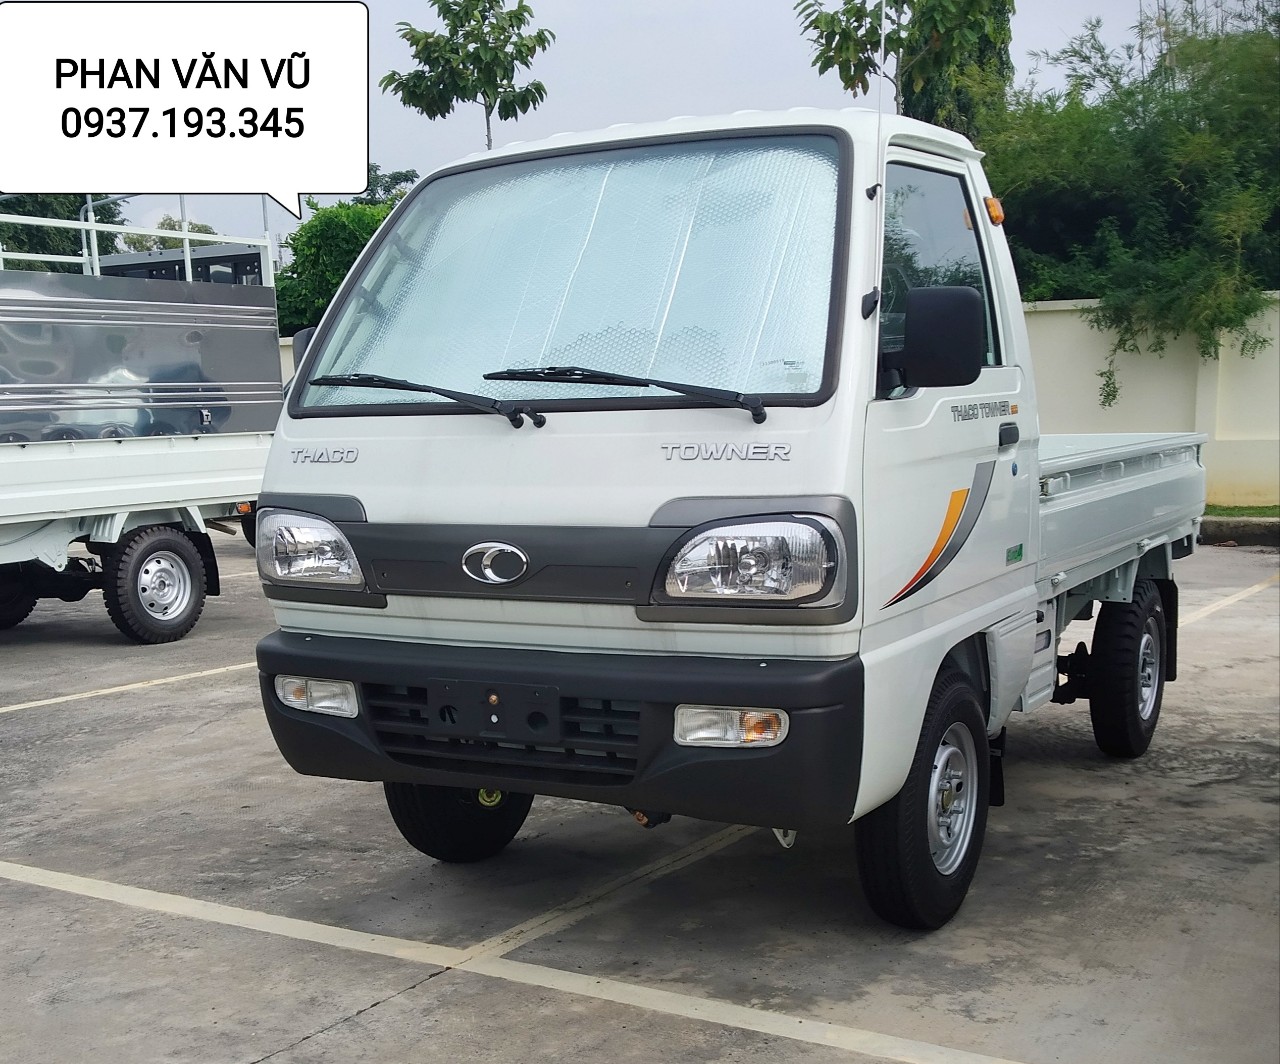 Mua xe tải công nghệ Suzuki giá rẻ, hỗ trợ trả góp 70% tại Bà Rịa Vũng Tàu-6